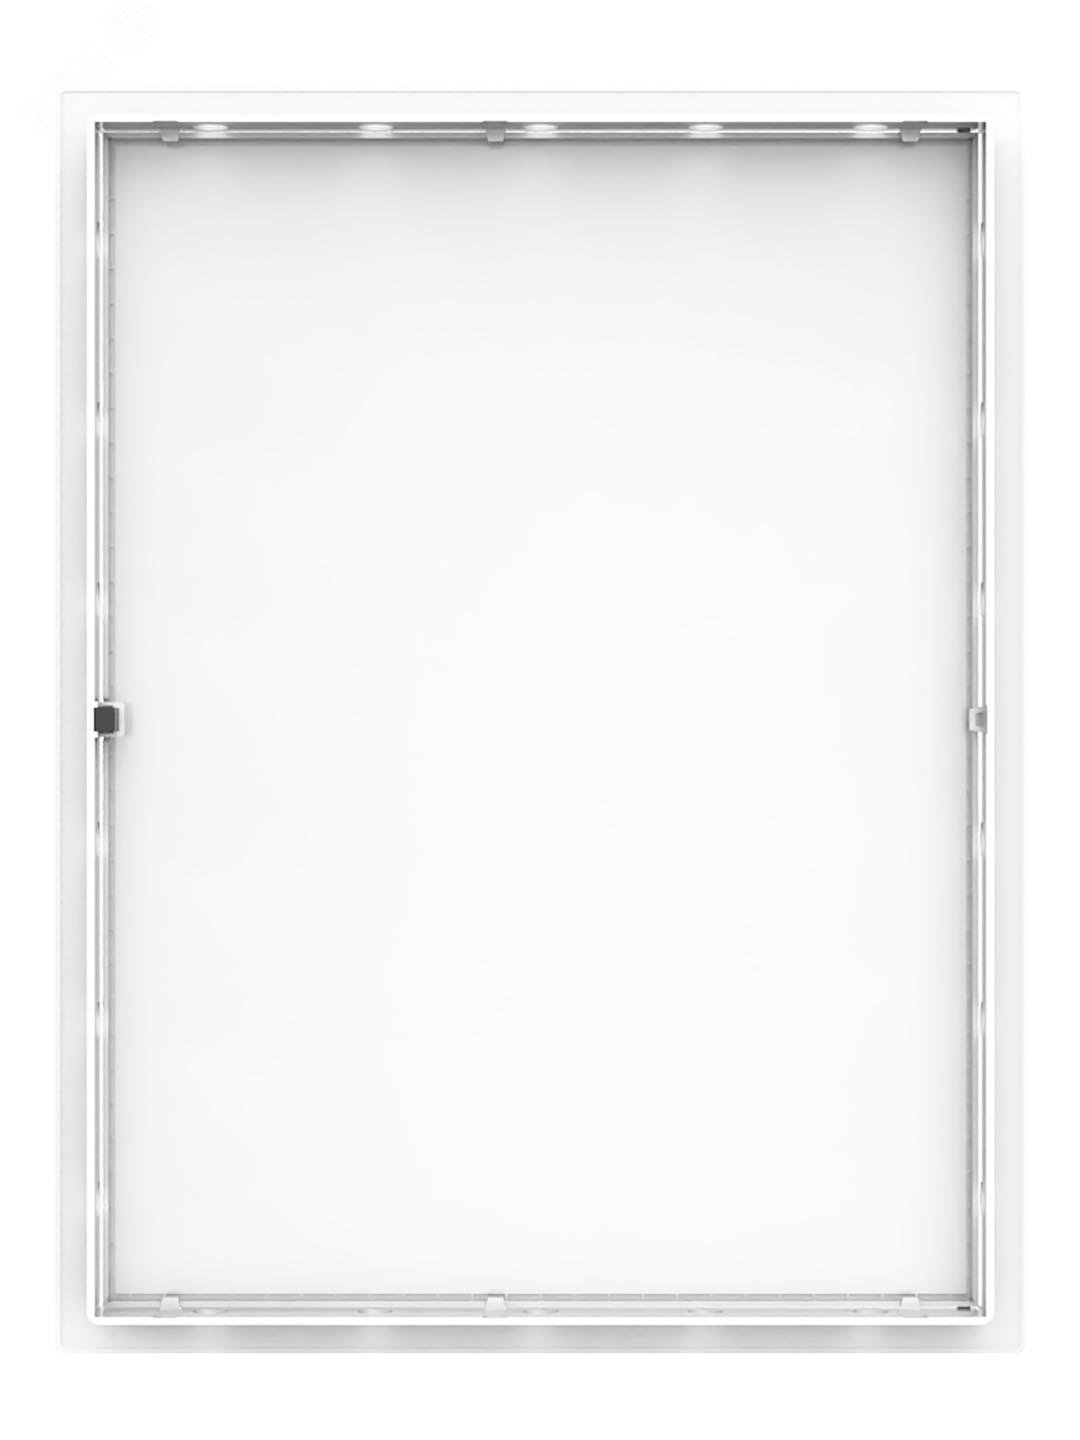 Люк-дверца ревизионный пластиковый нажимной 327х427 с фланцем 300х400 L3040N EVECS - превью 4